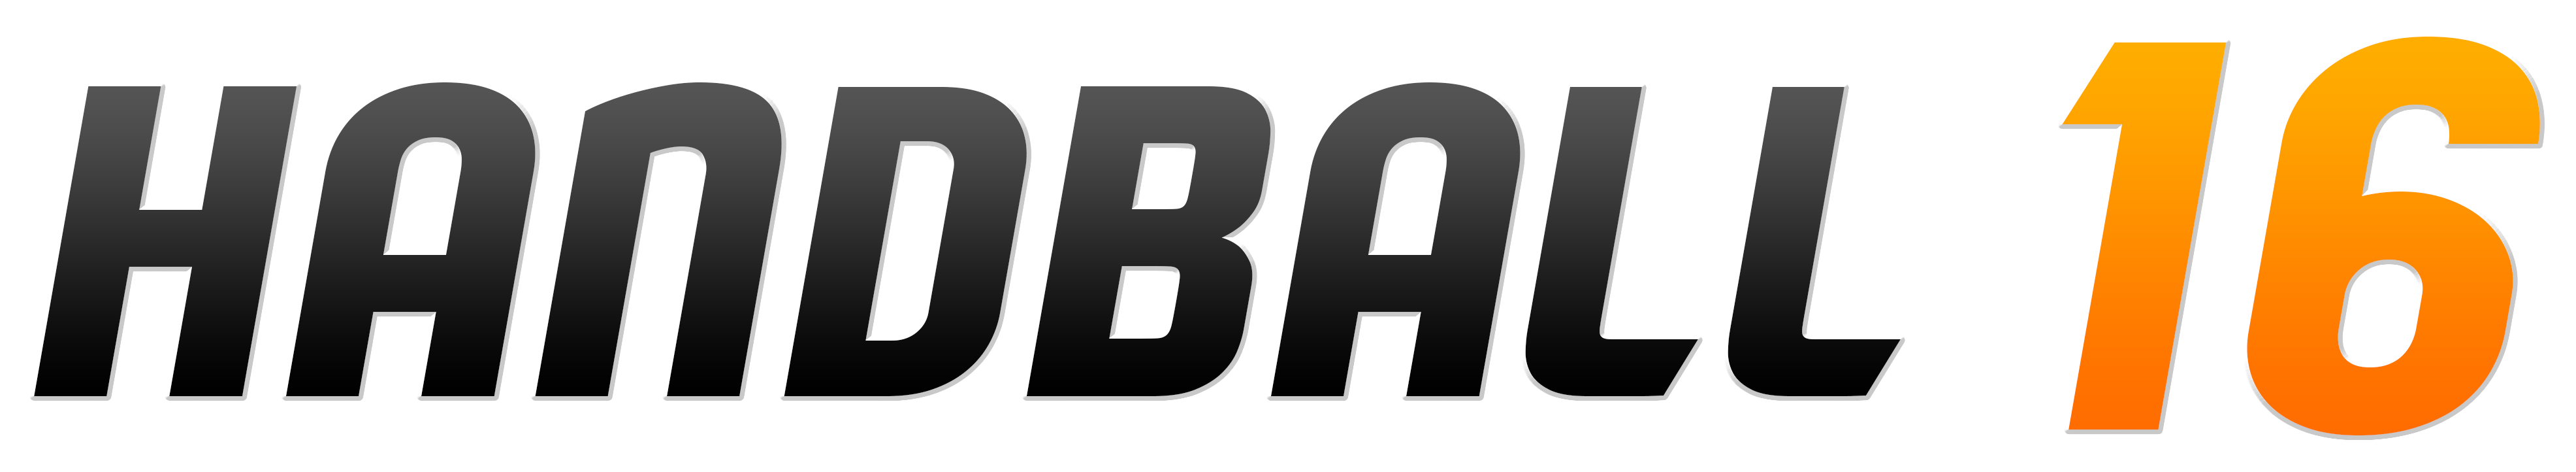 logo handball 16